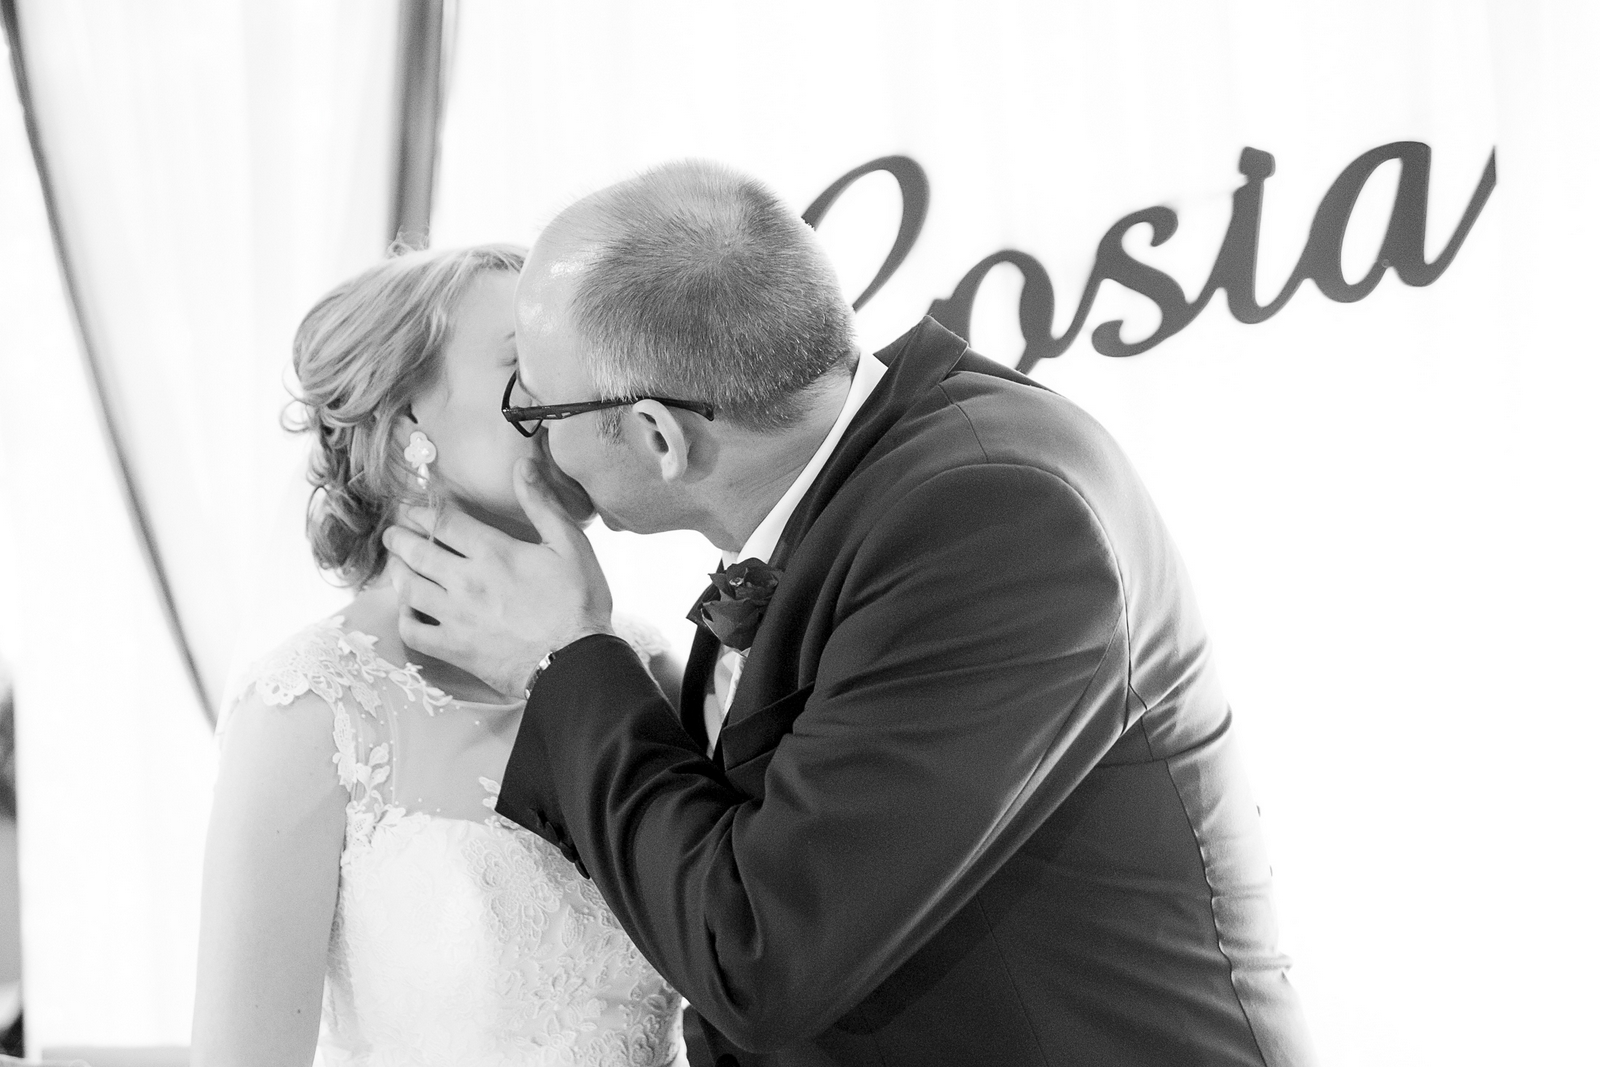 Zdjęcia profesjonalnego fotografa ślubnego zrobione podczas wesela parze młodej